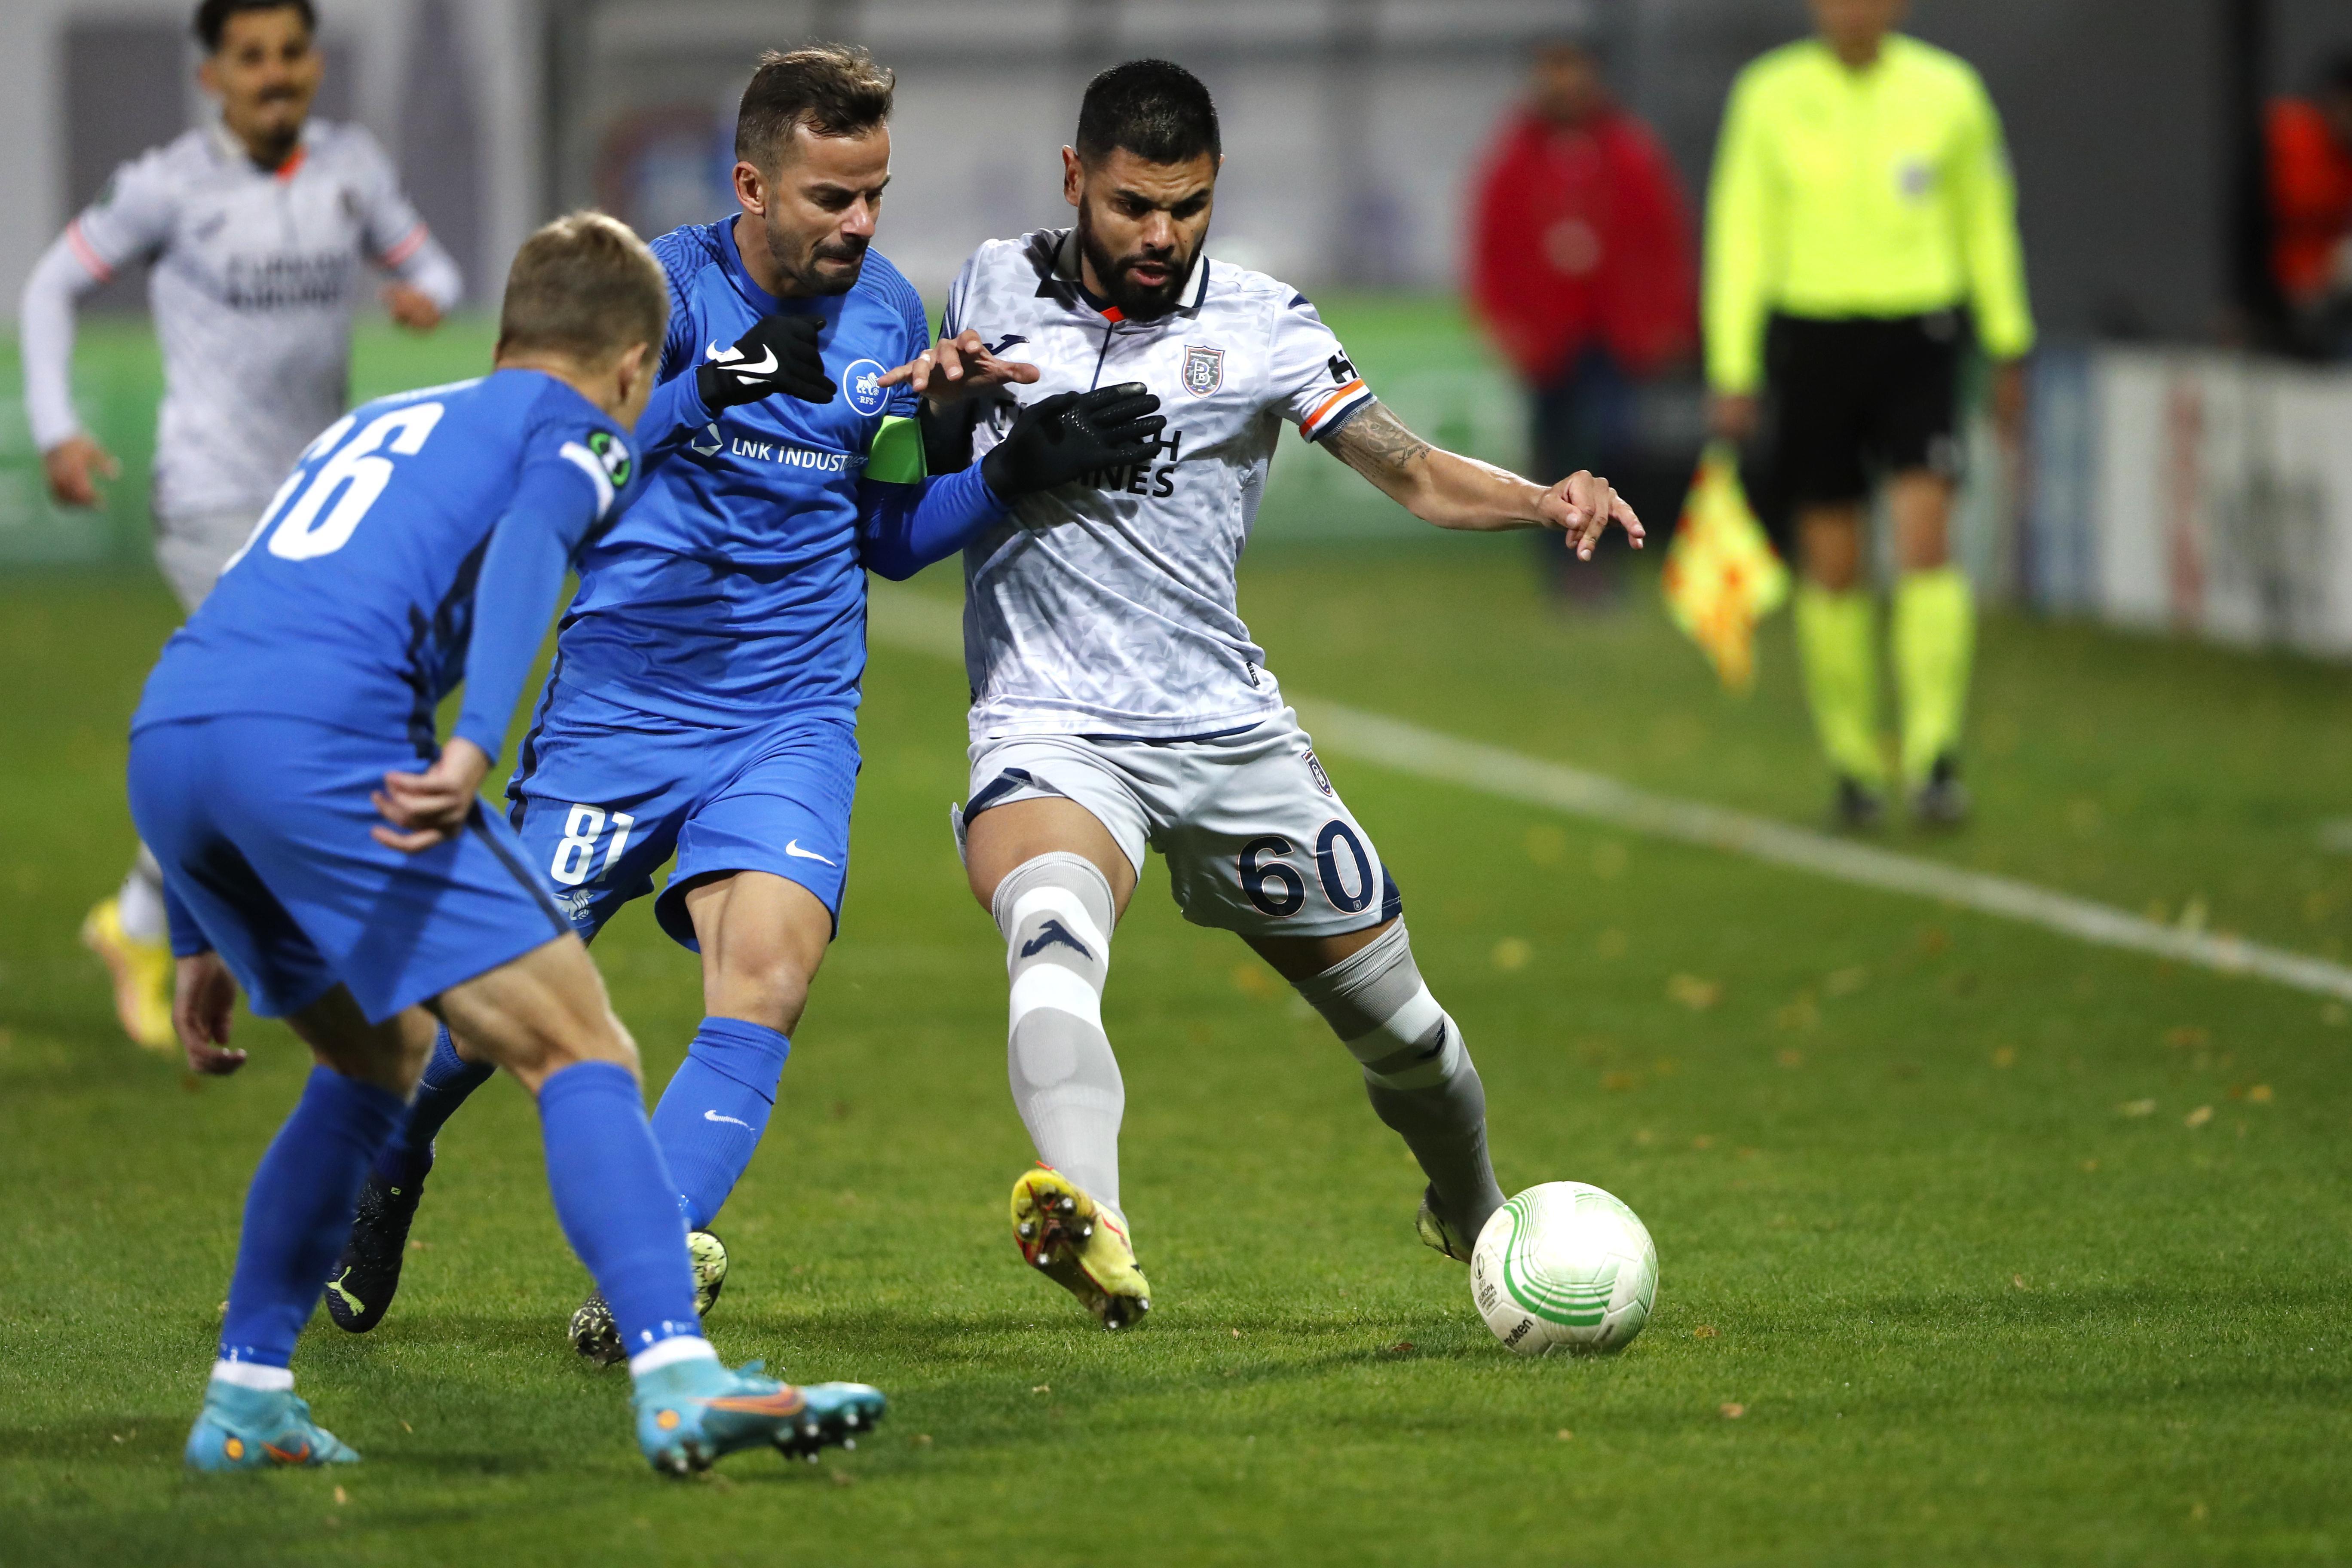 (ÖZET) Rigas Skola-Başakşehir maç sonucu: 0-0